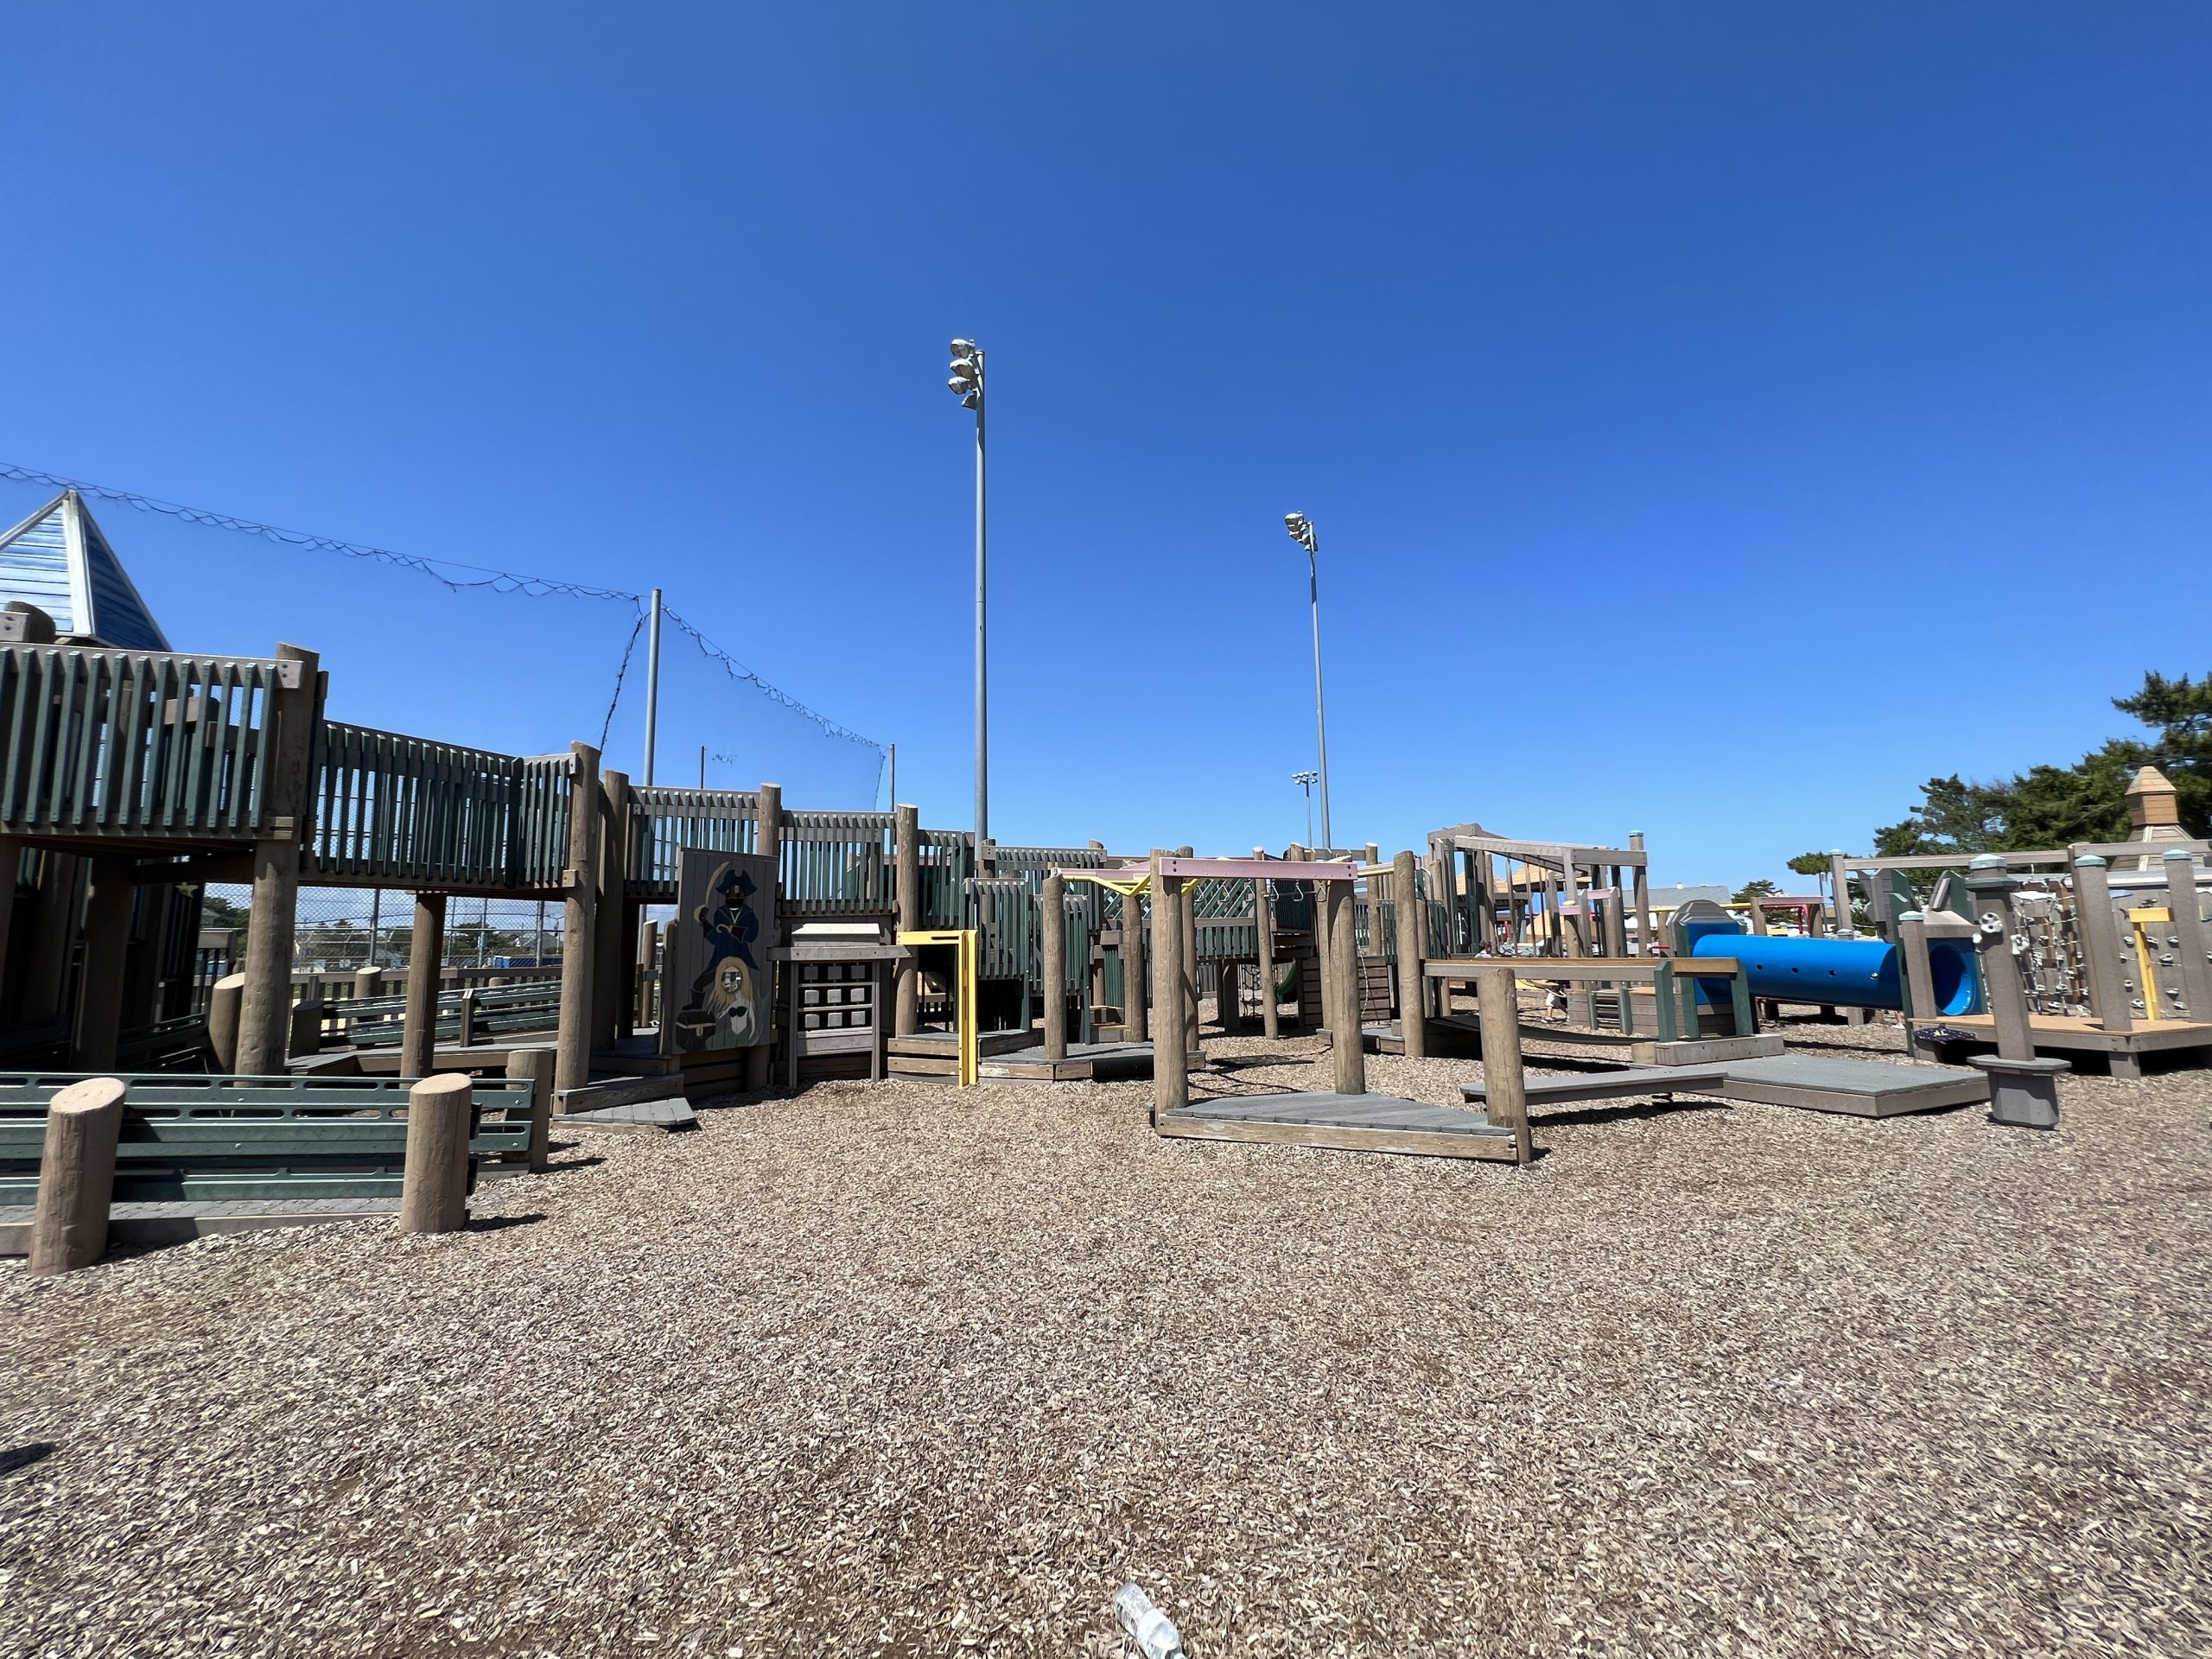 Shark Park Playground in Brigantine NJ horizontal image